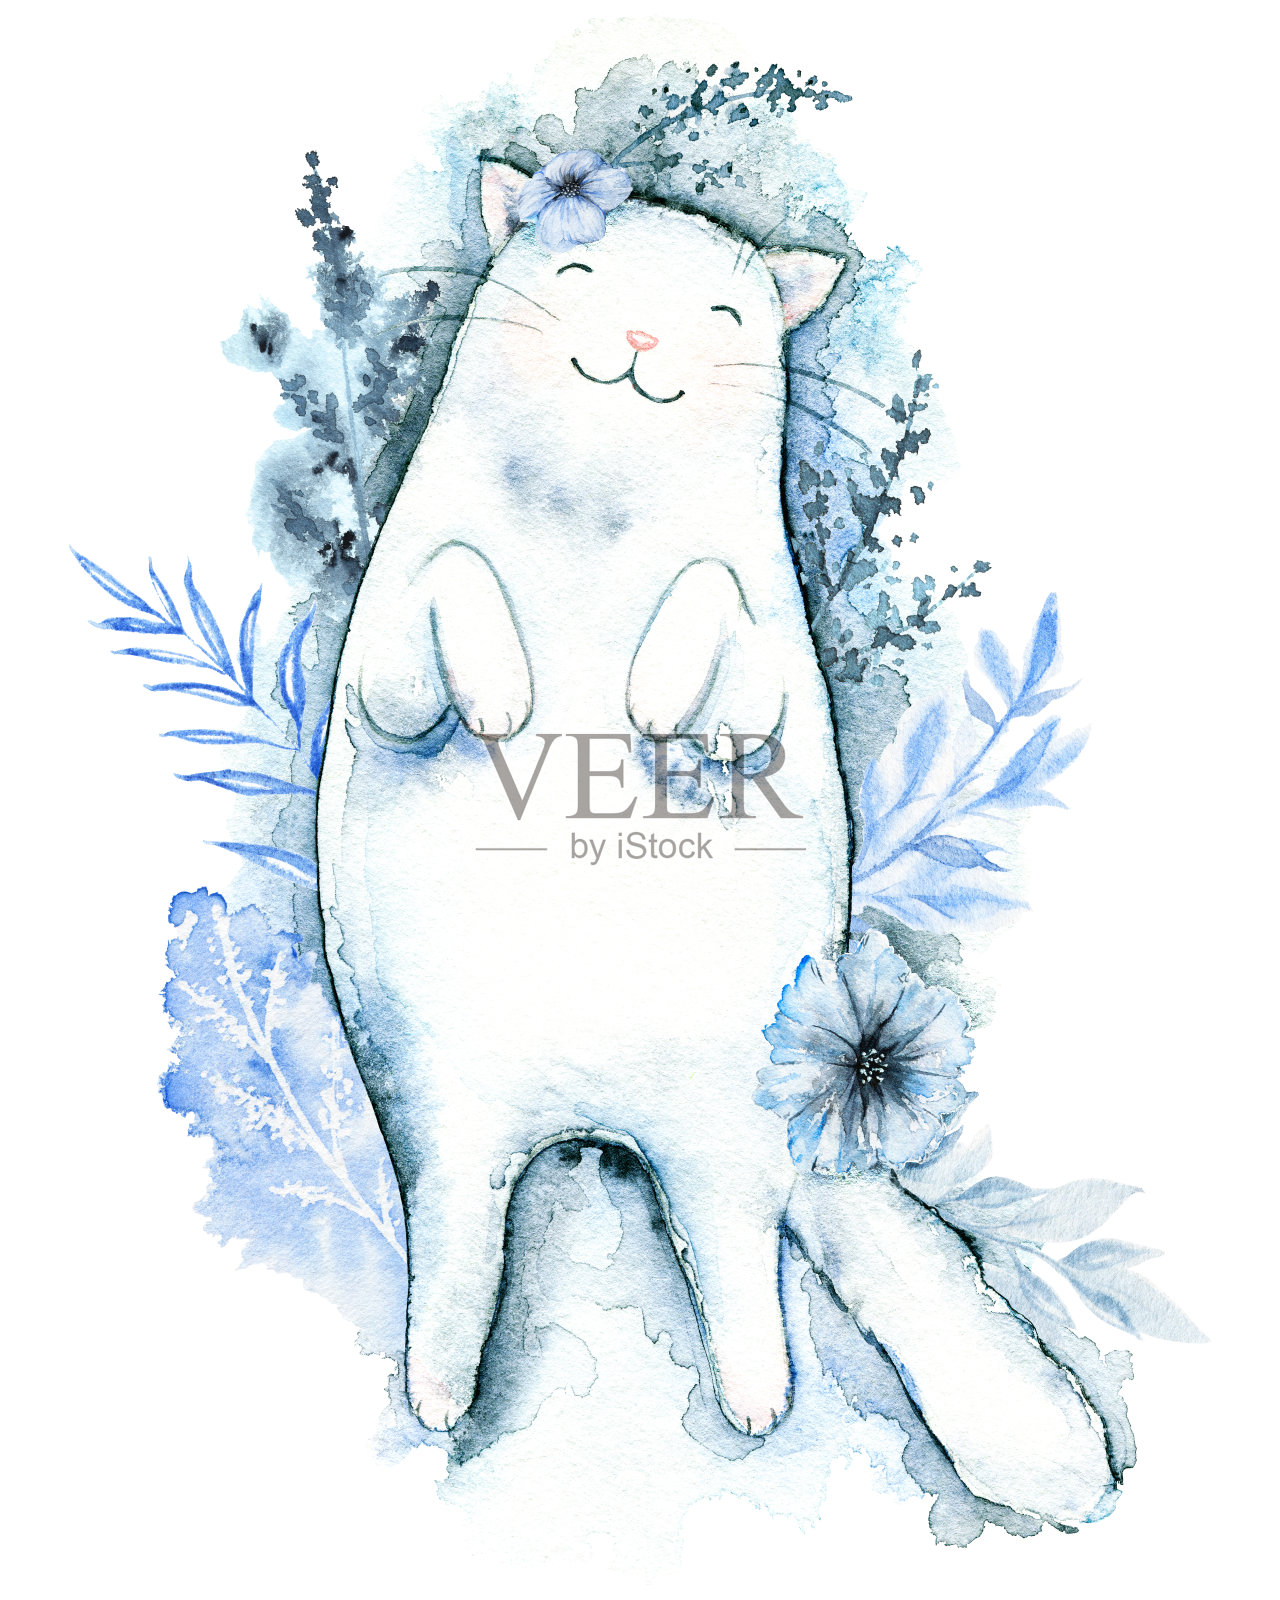 水彩画白猫睡在花上插画图片素材